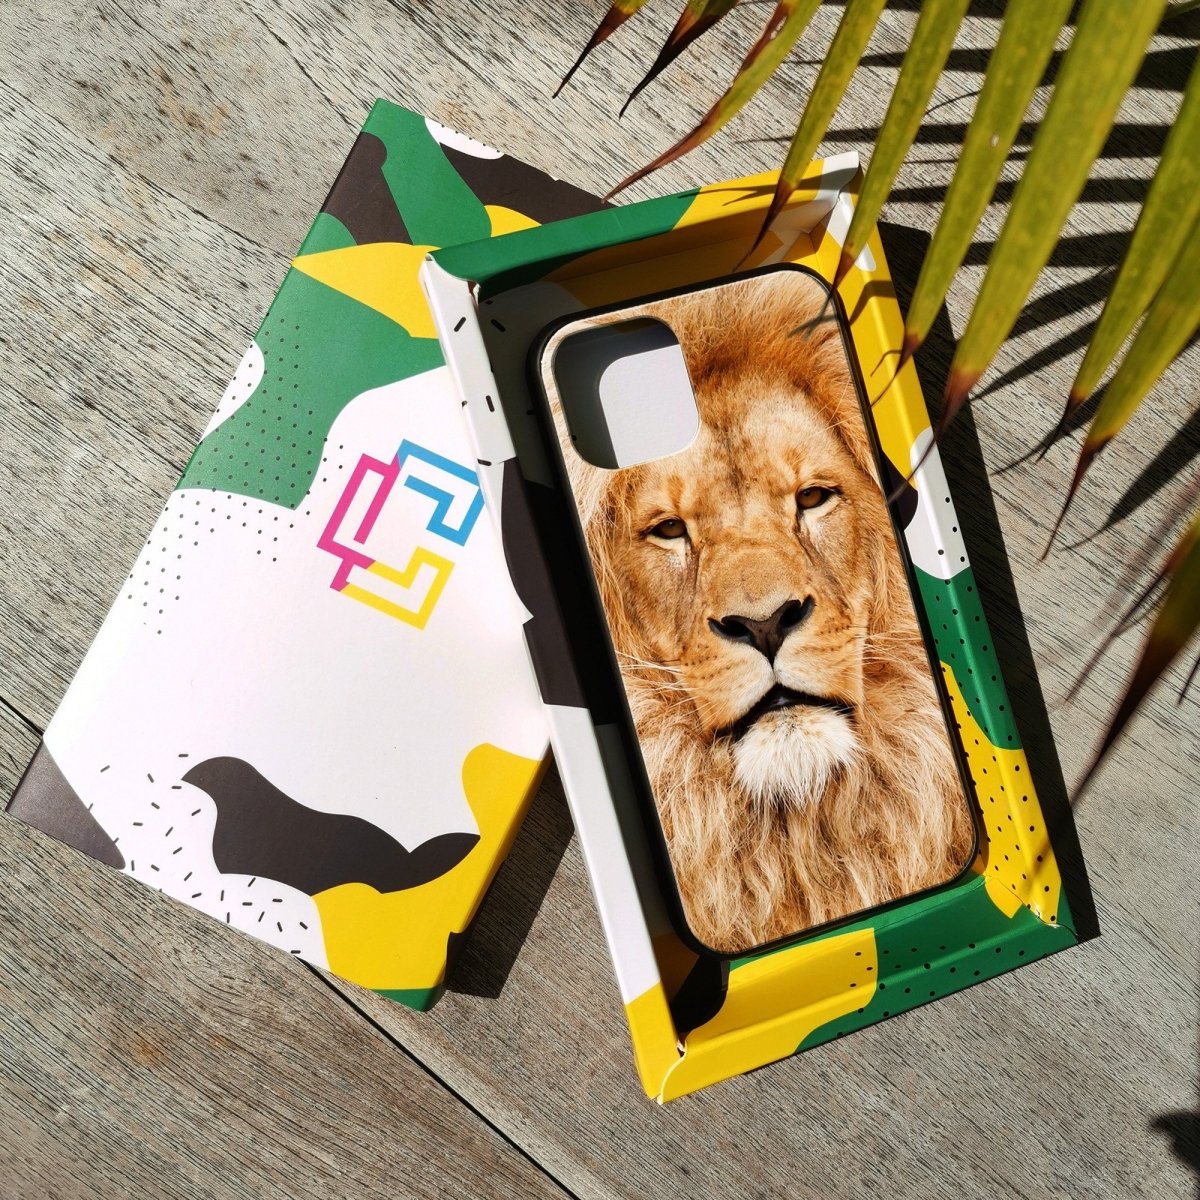 Lion Face - Glass Phone Case - cmzart